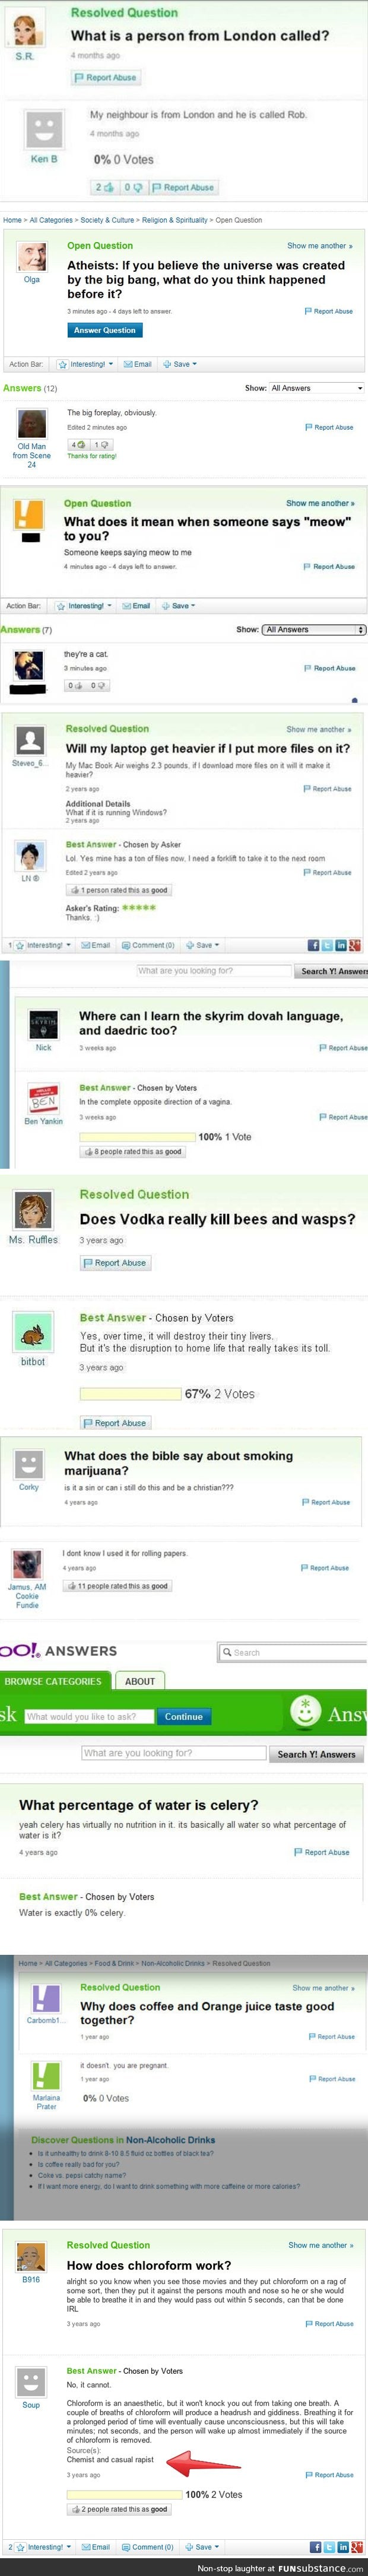 Yahoo answers comp